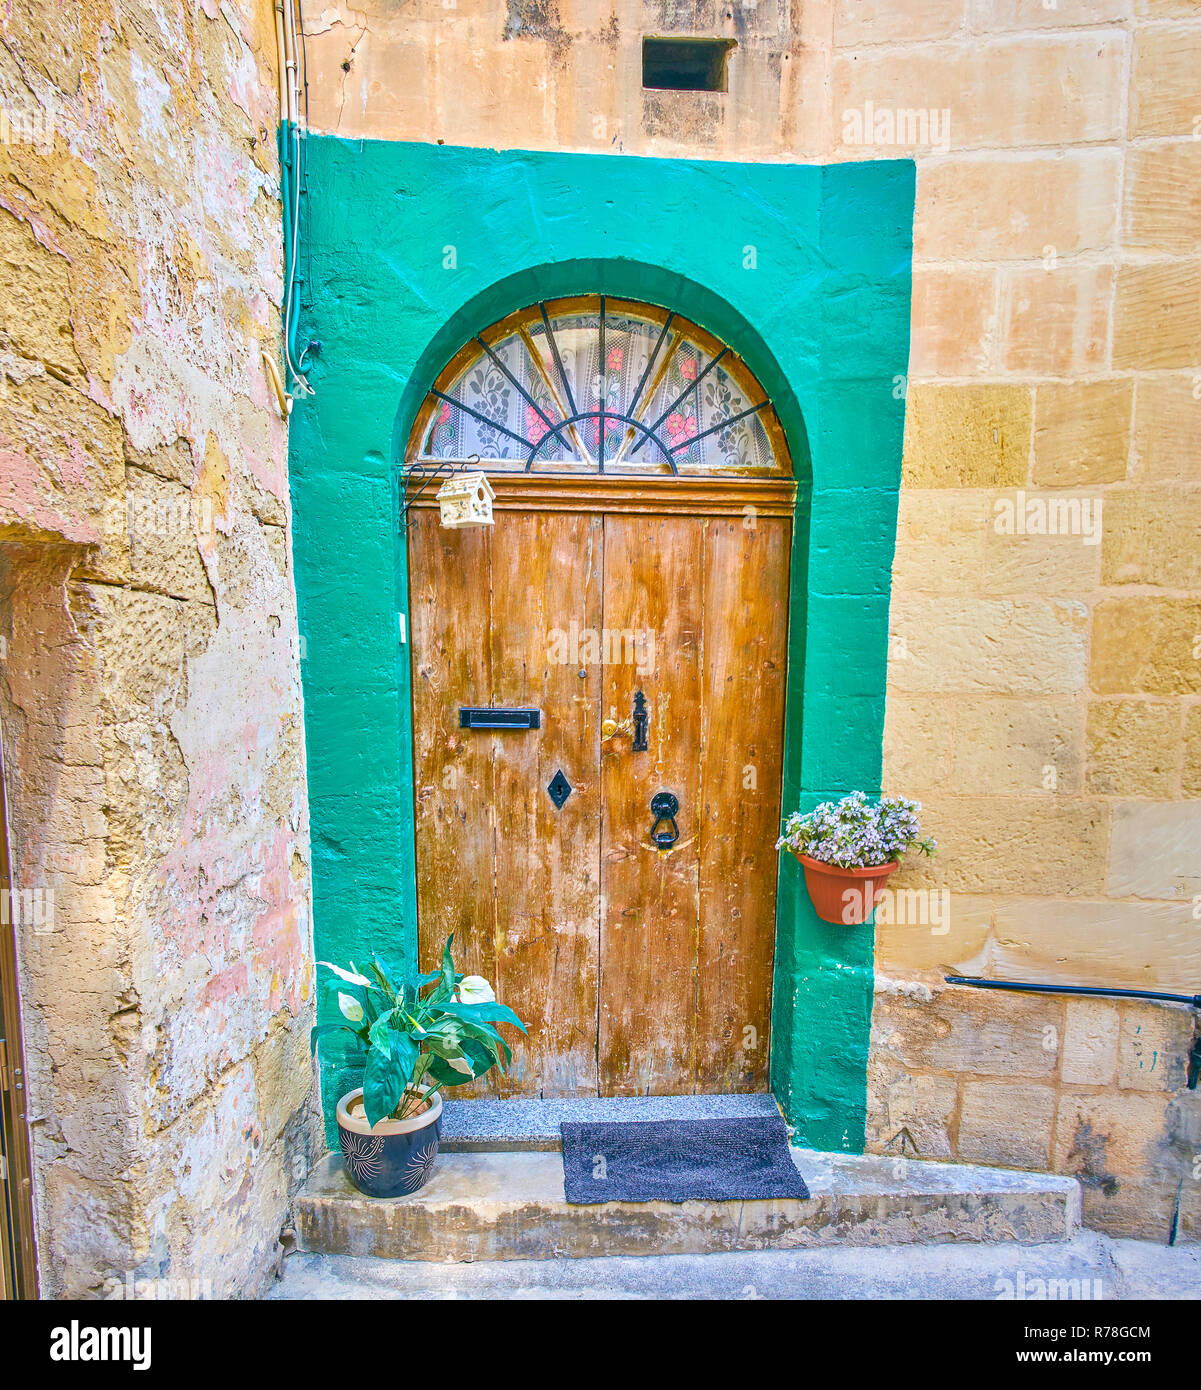 Die alte Tür mit der halben Runde Fenster oben und Blumen in Töpfe könnte  in der Altstadt von Mosta, Malta gefunden werden Stockfotografie - Alamy